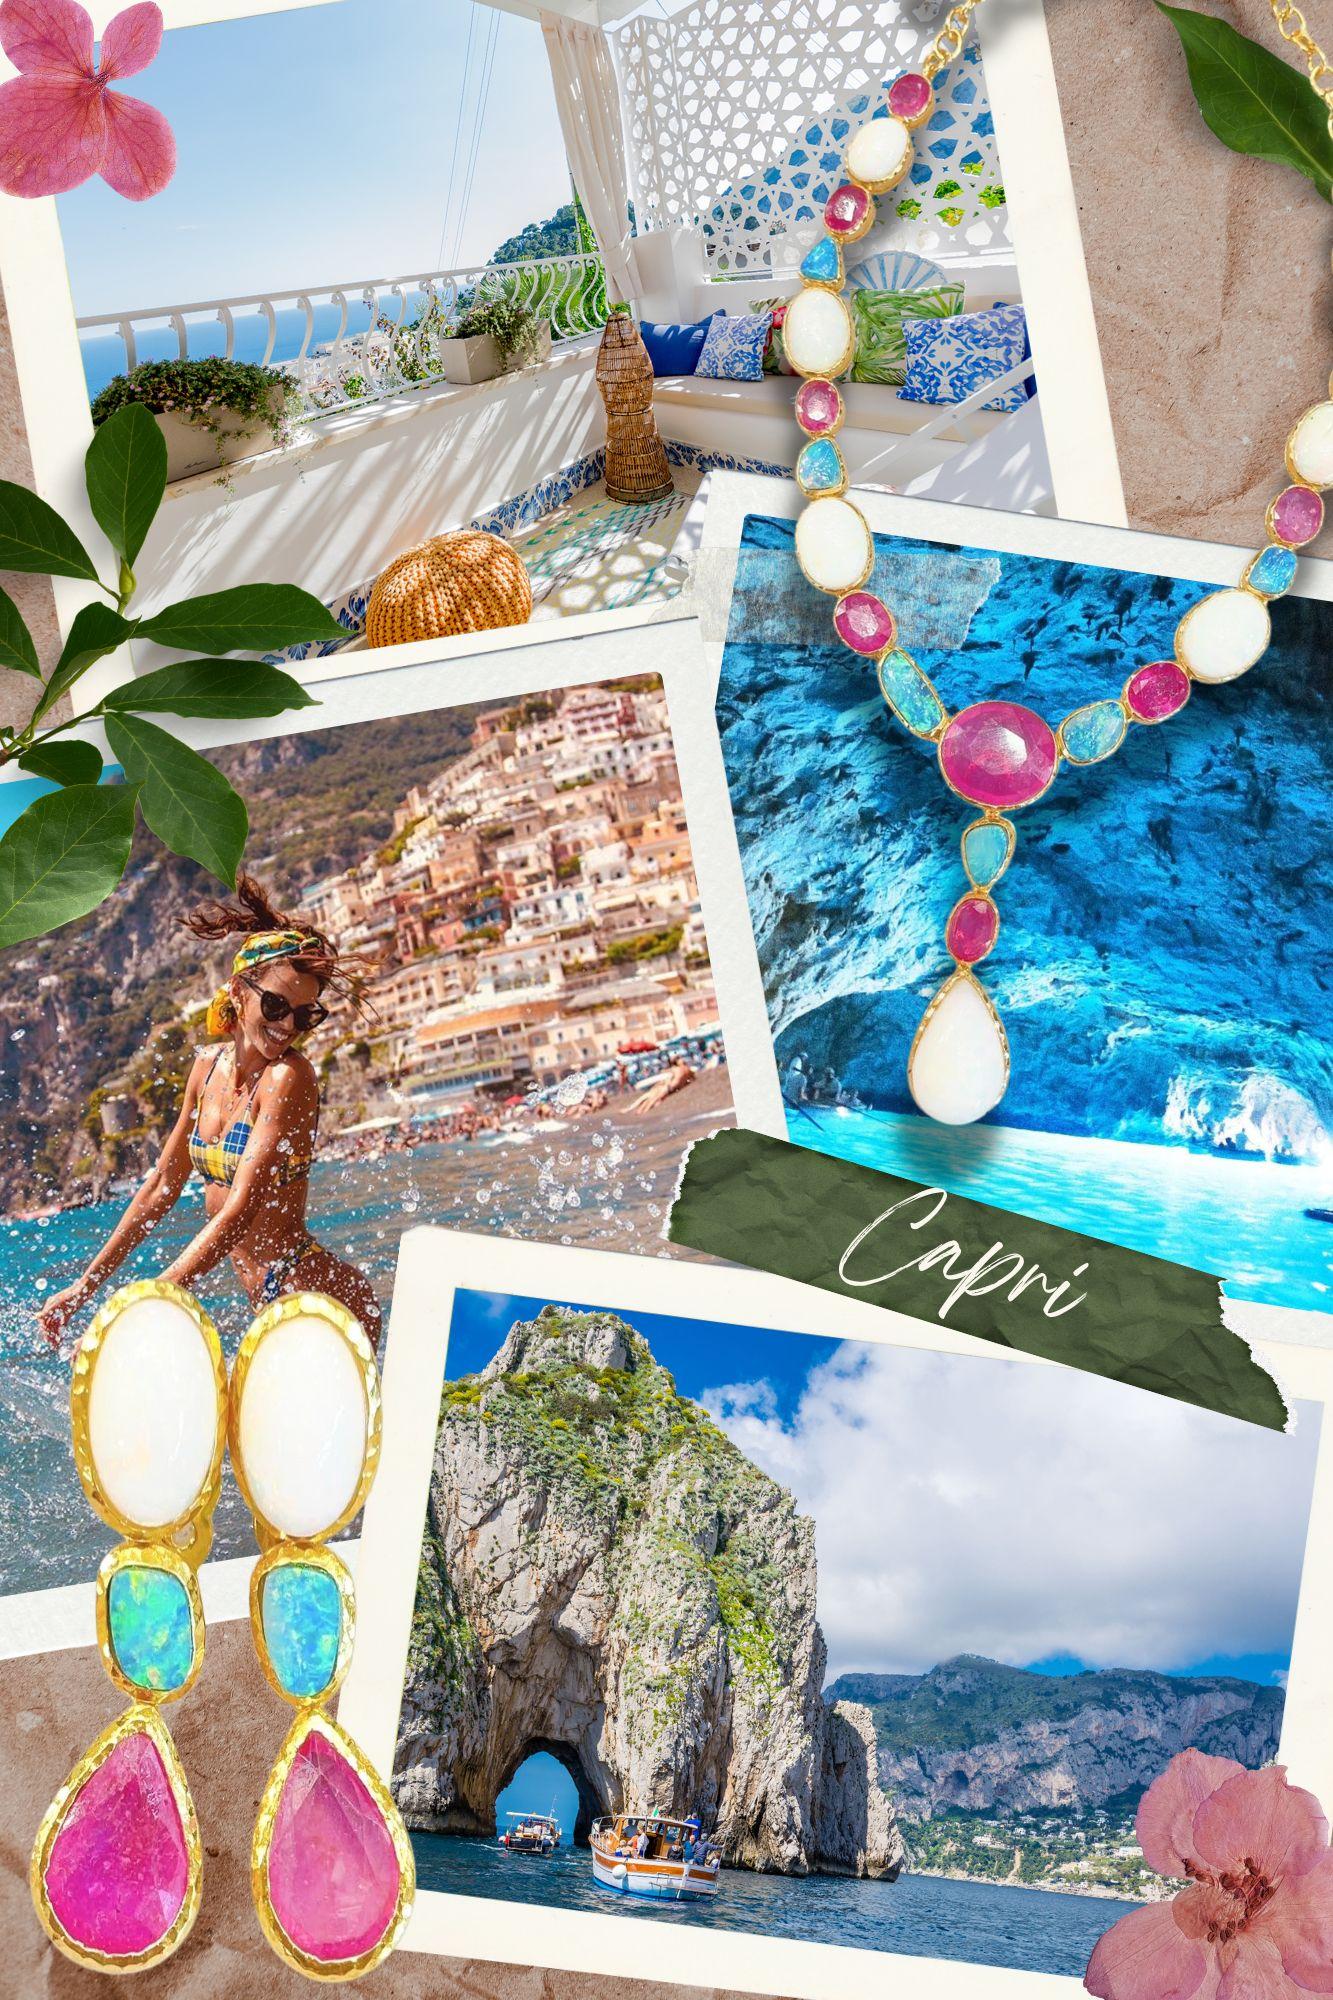 “Capri” Blue Opal, Sapphire & South Sea Pear Earrings Set in 22k & Silver For Sale 2